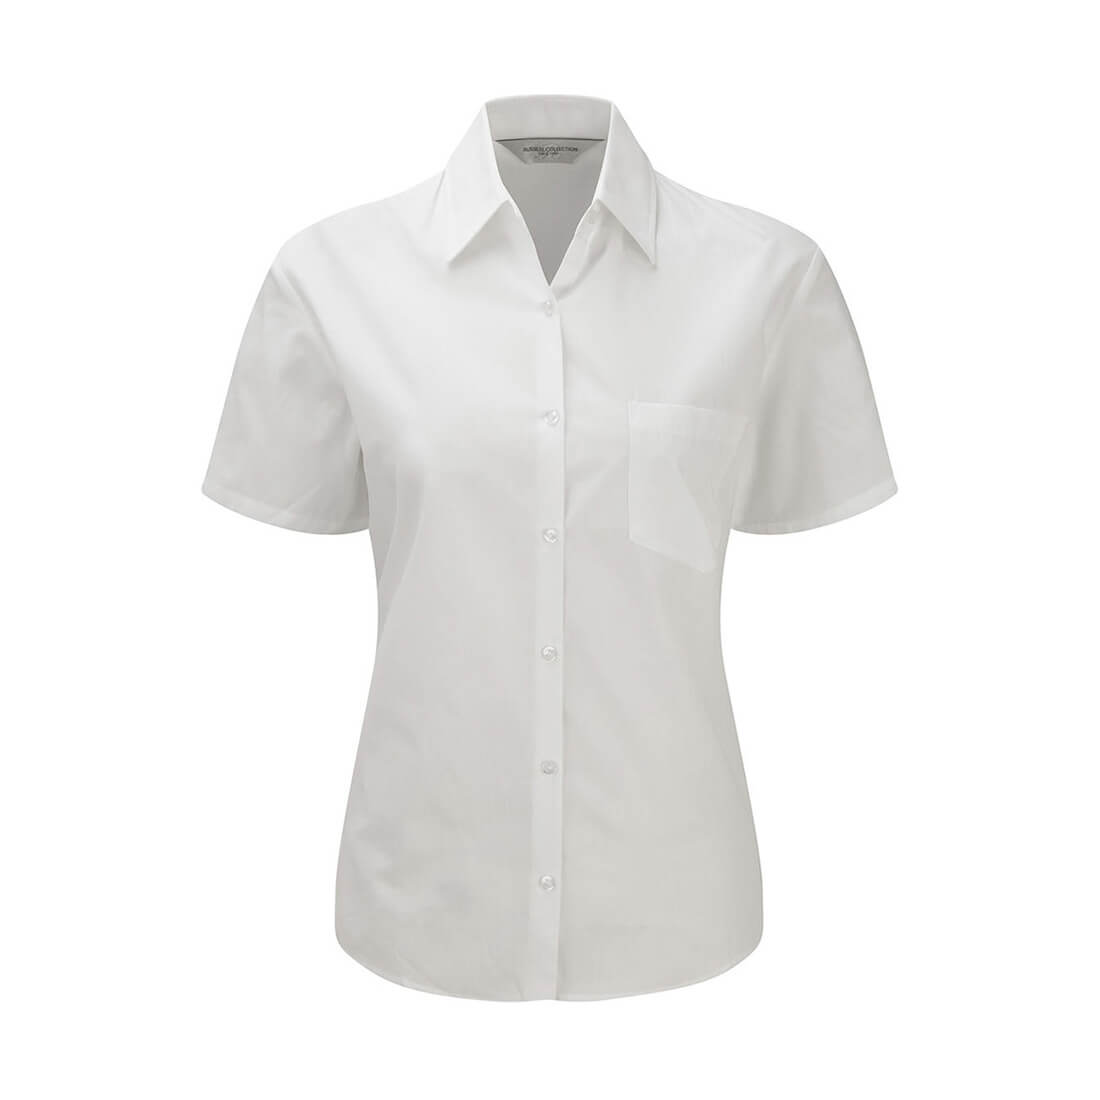 Camicia popeline puro cotone maniche corte - Abbigliamento di protezione